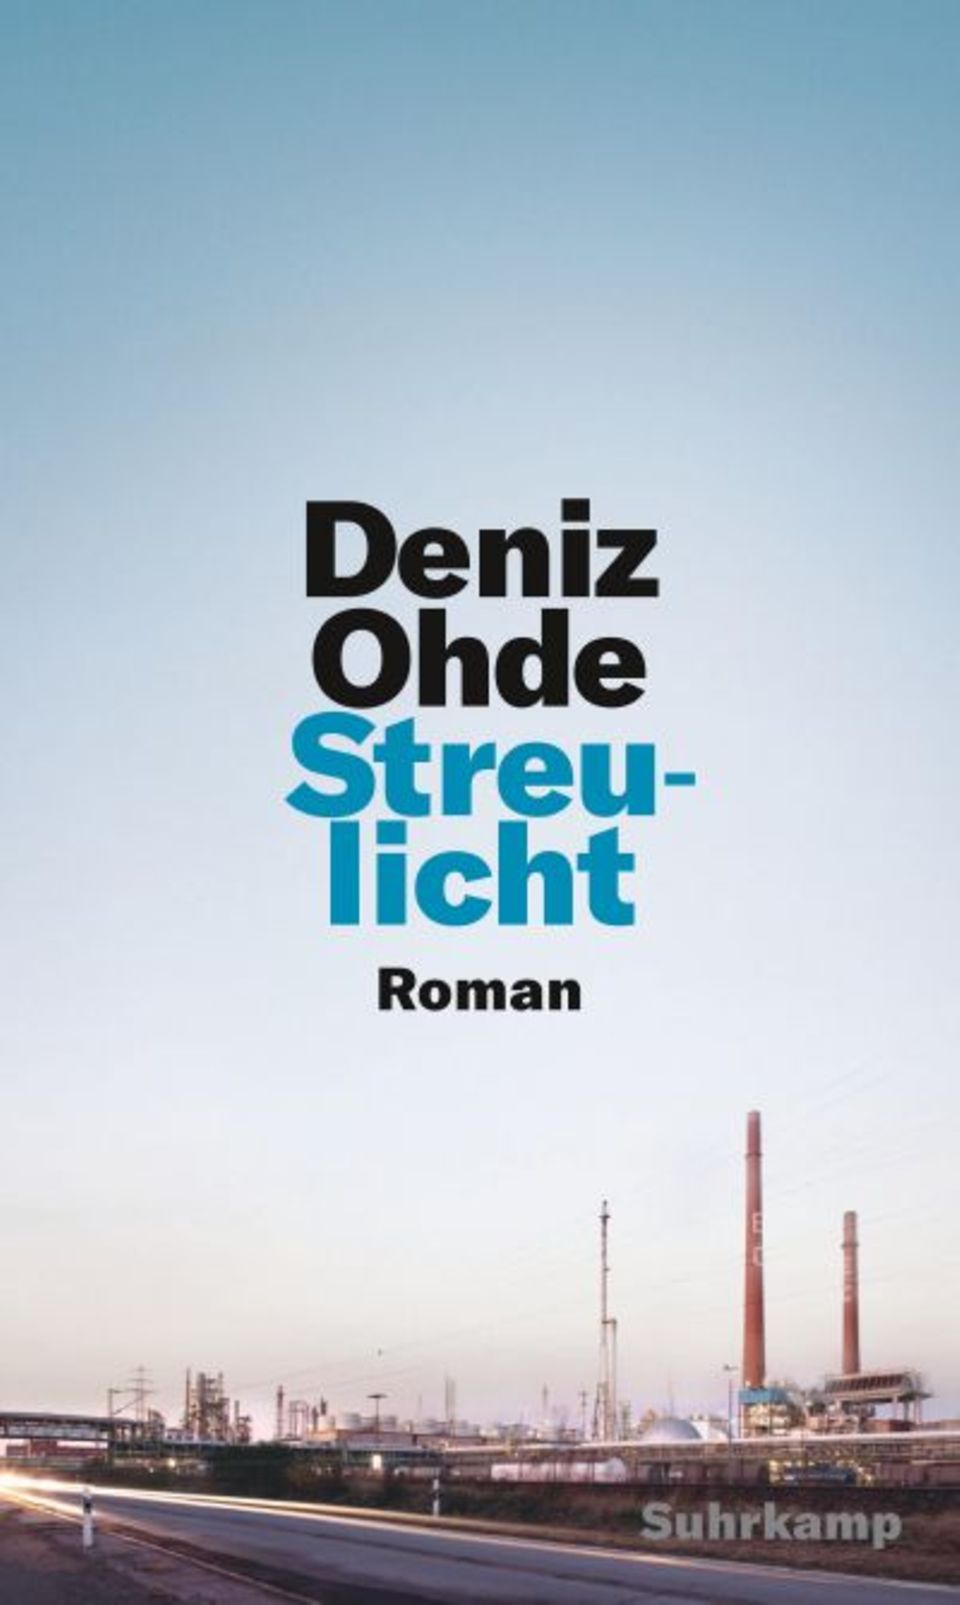 Rassismus in Deutschland ist ein wichtiges und endlich auch ein großes Thema. Dazu passt Deniz Ohdes Debütroman "Streulicht". Er ist wunderbar geschrieben und ergründet die subtilen und dennoch wirkmächtigen Facetten der Ausgrenzung von Einwanderer:innen, die jenseits offener Feindseligkeit stattfindet. Die Ich-Erzählerin leidet unter den oft unausgesprochenen Zuschreibungen als migrantisches Arbeiterkind und an der Kluft zwischen Bildungsversprechen und erfahrener Ungleichheit. Nach und nach versucht sie, sich von der verinnerlichten Abwertung ihrer Person durch die Mehrheitsgesellschaft zu befreien. Das berührende Debüt, das mit dem Literaturpreis der Jürgen-Ponto-Stiftung ausgezeichnet wurde, möchte ich meiner Nichte, die Grundschullehramt studiert, unter den Weihnachtsbaum legen. 